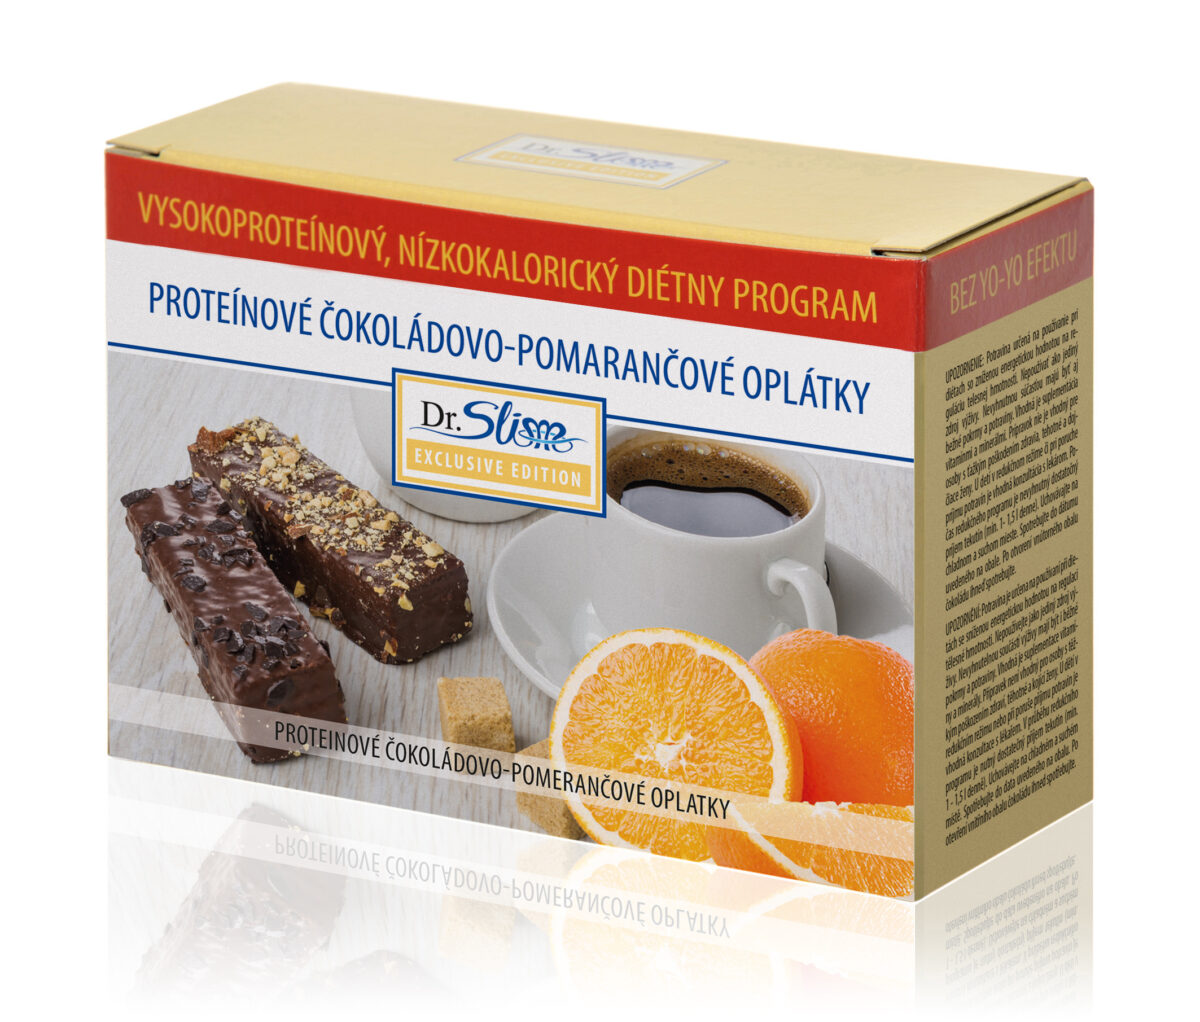 Proteínové čokoládovo-pomarančové oplátky